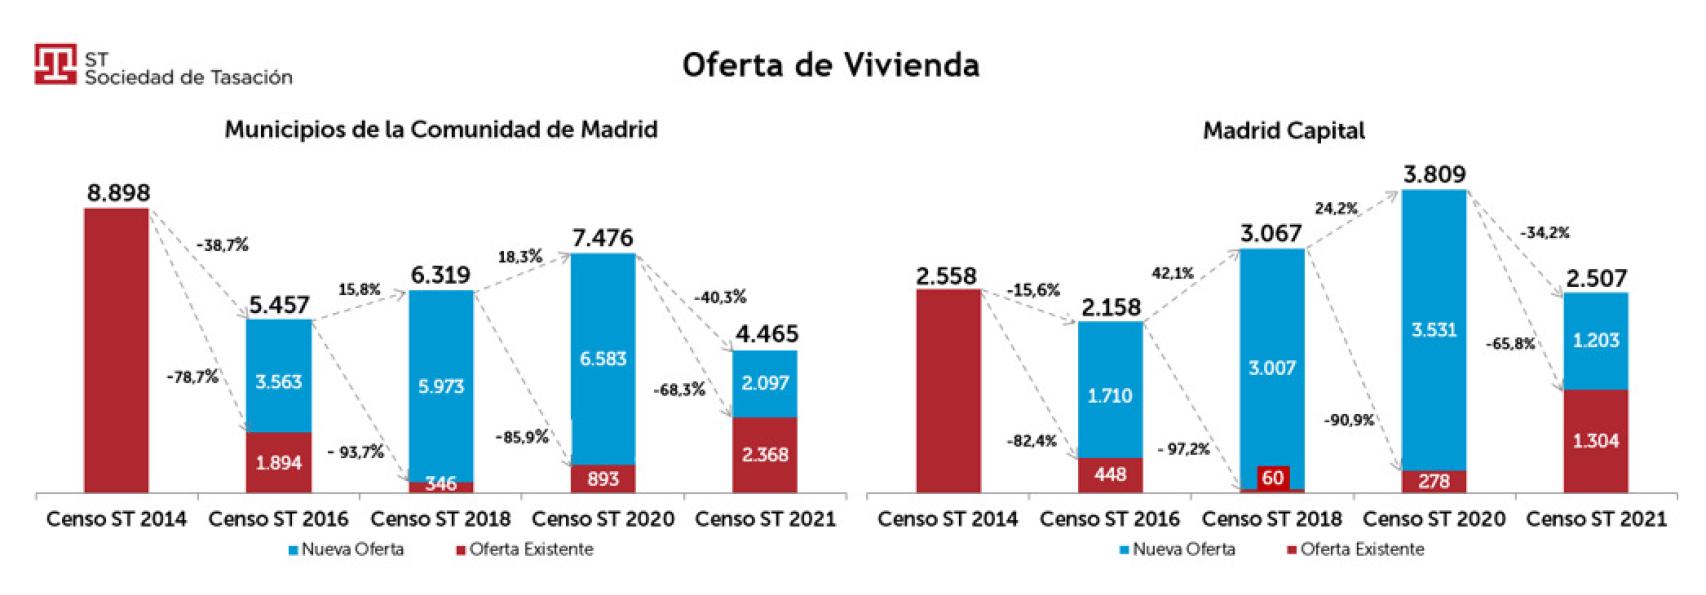 Oferta de vivienda en la Comunidad de Madrid y la capital.